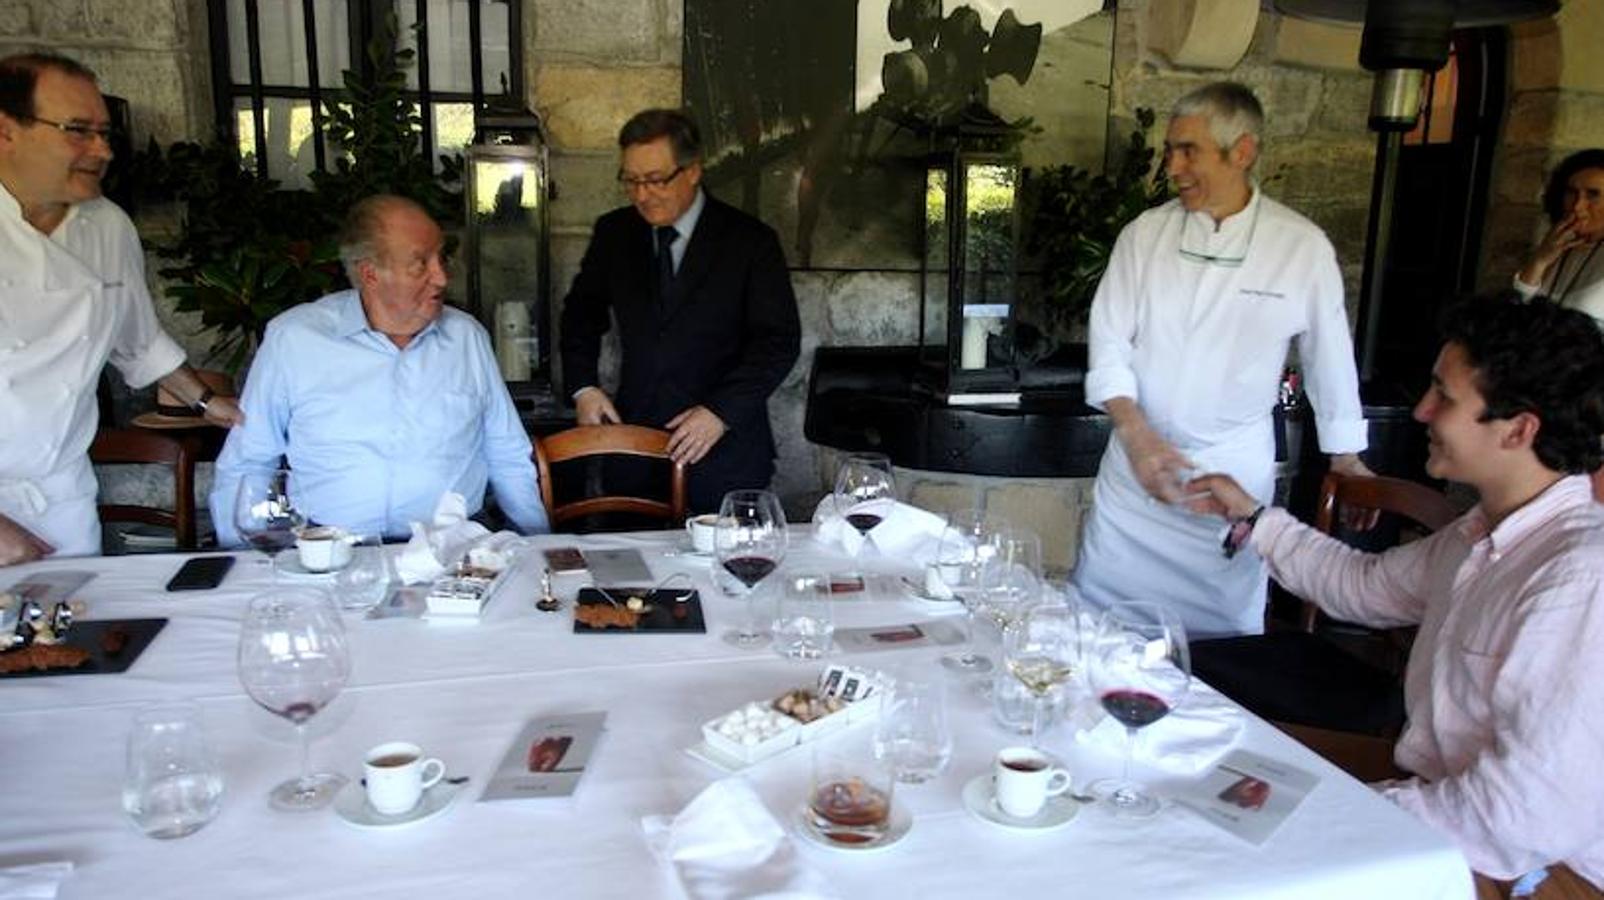 Tras la visita al restaurante, Juan Carlos de Borbón acudió a Illunbe para disfrutar de la tarde de toros con José Tomás y El Juli